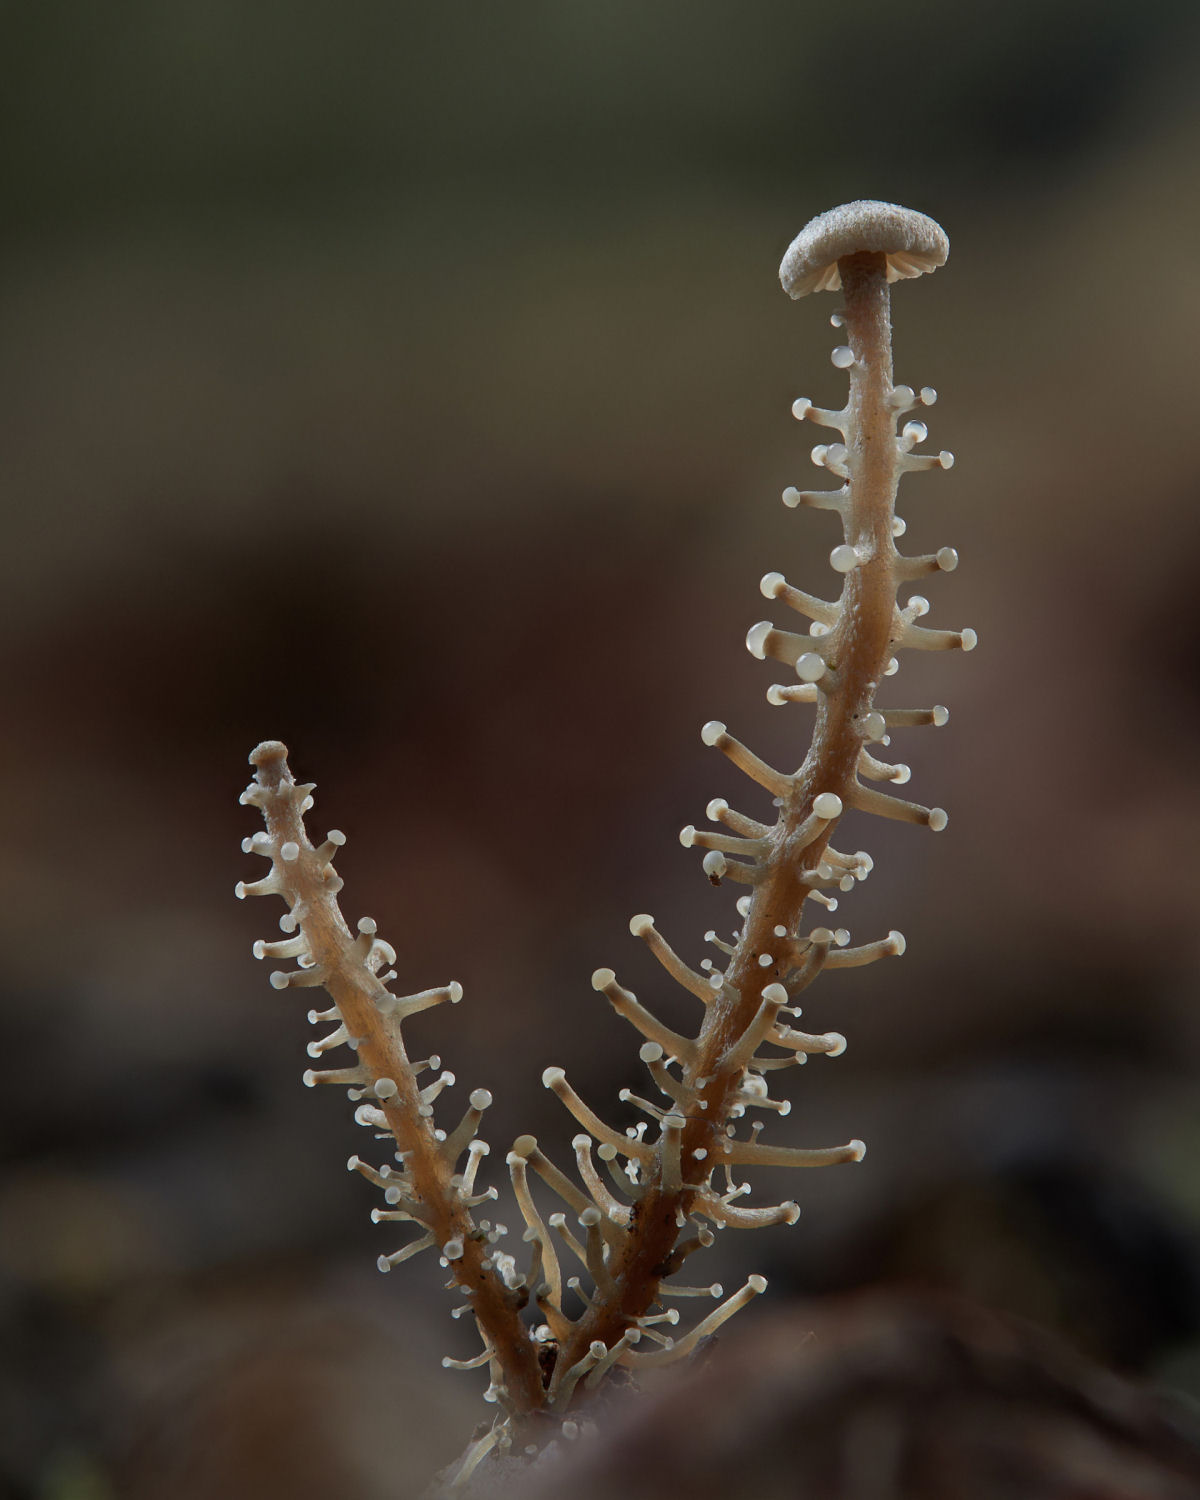 Macrofotografias mostram a espantosa biodiversidade dos fungos 10